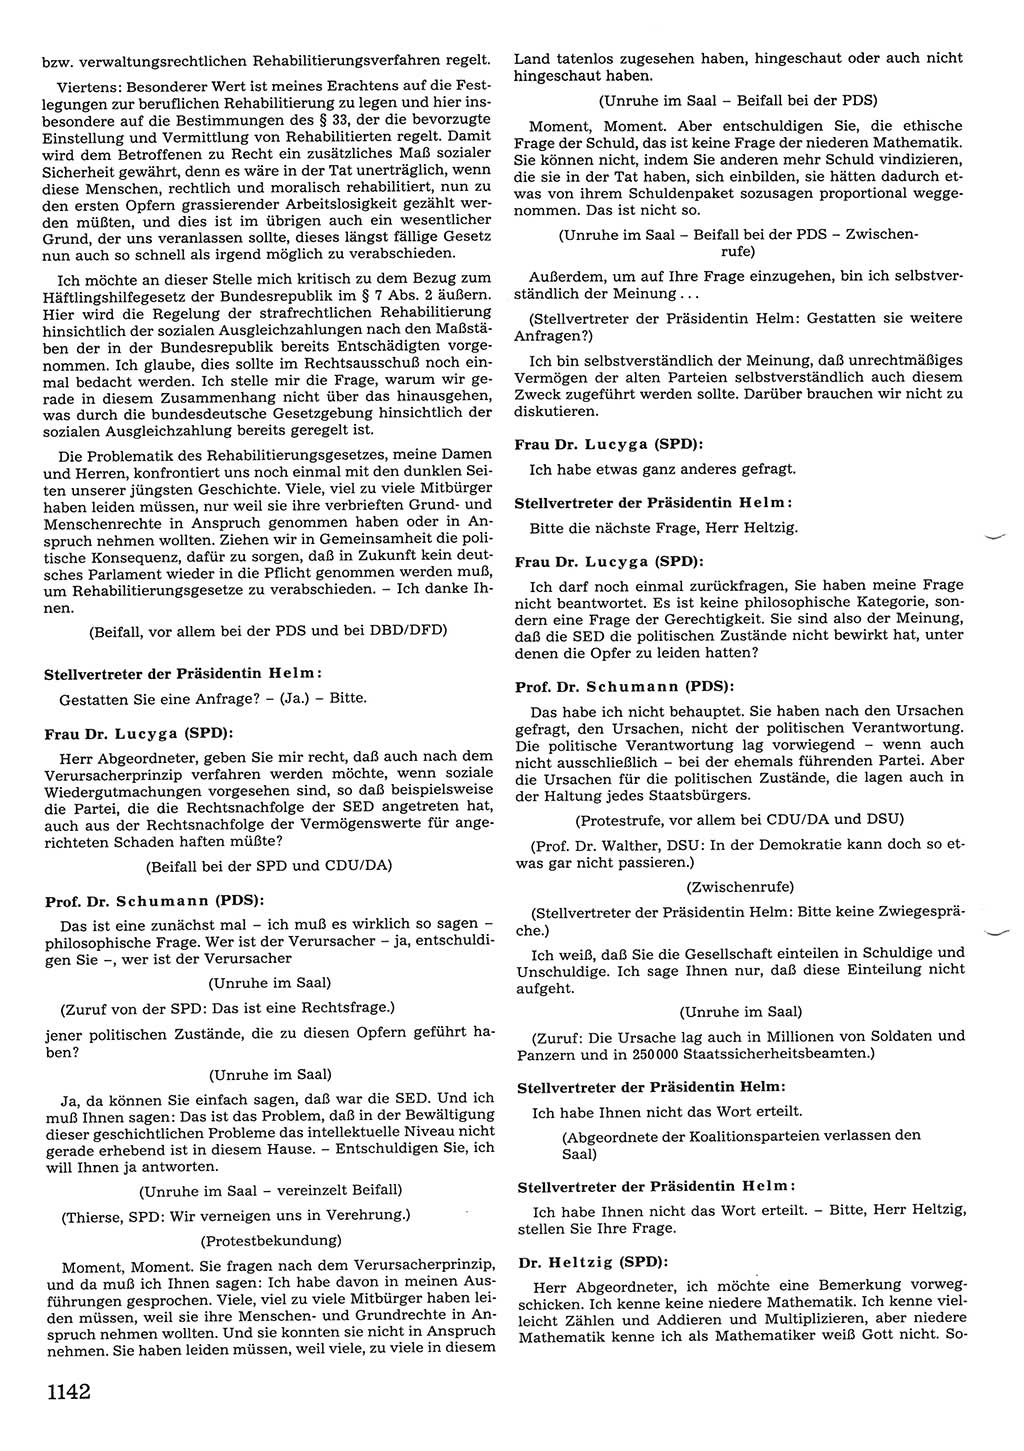 Tagungen der Volkskammer (VK) der Deutschen Demokratischen Republik (DDR), 10. Wahlperiode 1990, Seite 1142 (VK. DDR 10. WP. 1990, Prot. Tg. 1-38, 5.4.-2.10.1990, S. 1142)